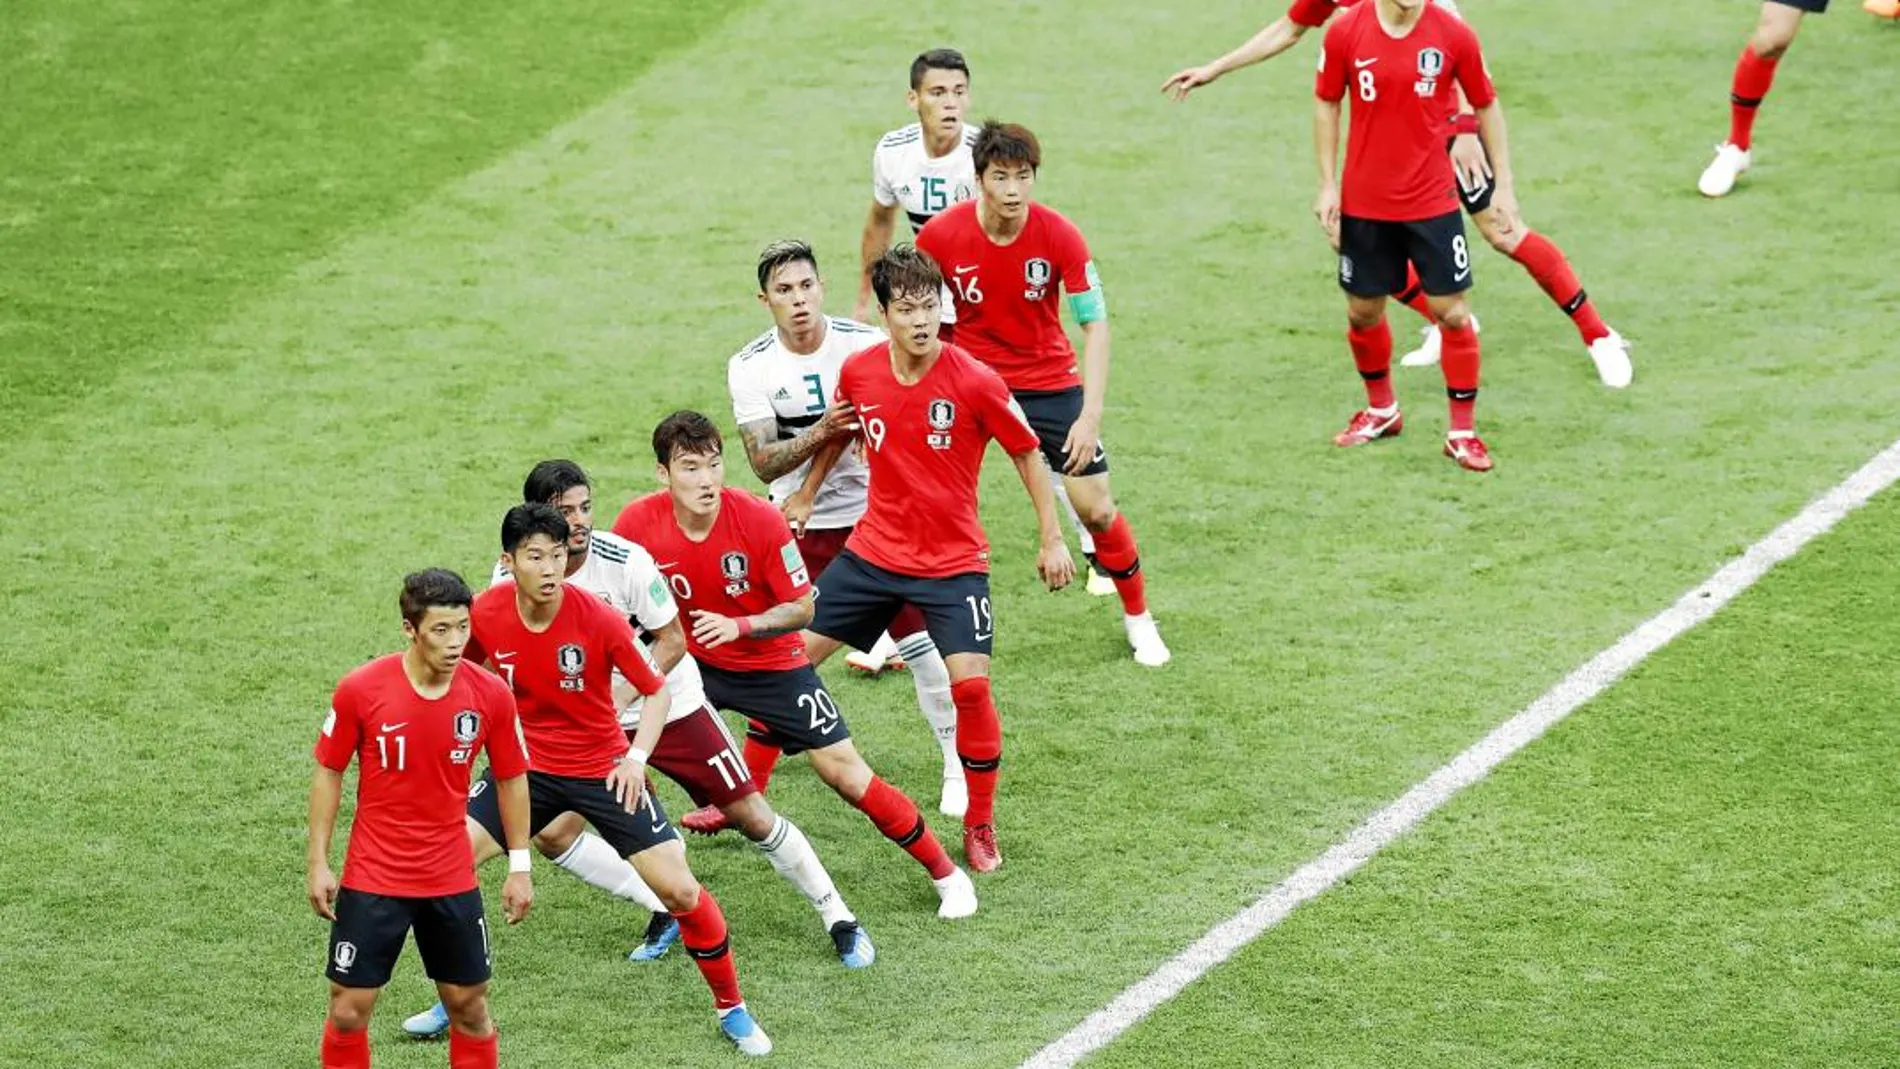 Corea del Sur quedó ayer eliminada del torneo al caer ante México por 2-1. Los asiáticos han sufrido dos derrotas en dos partidos